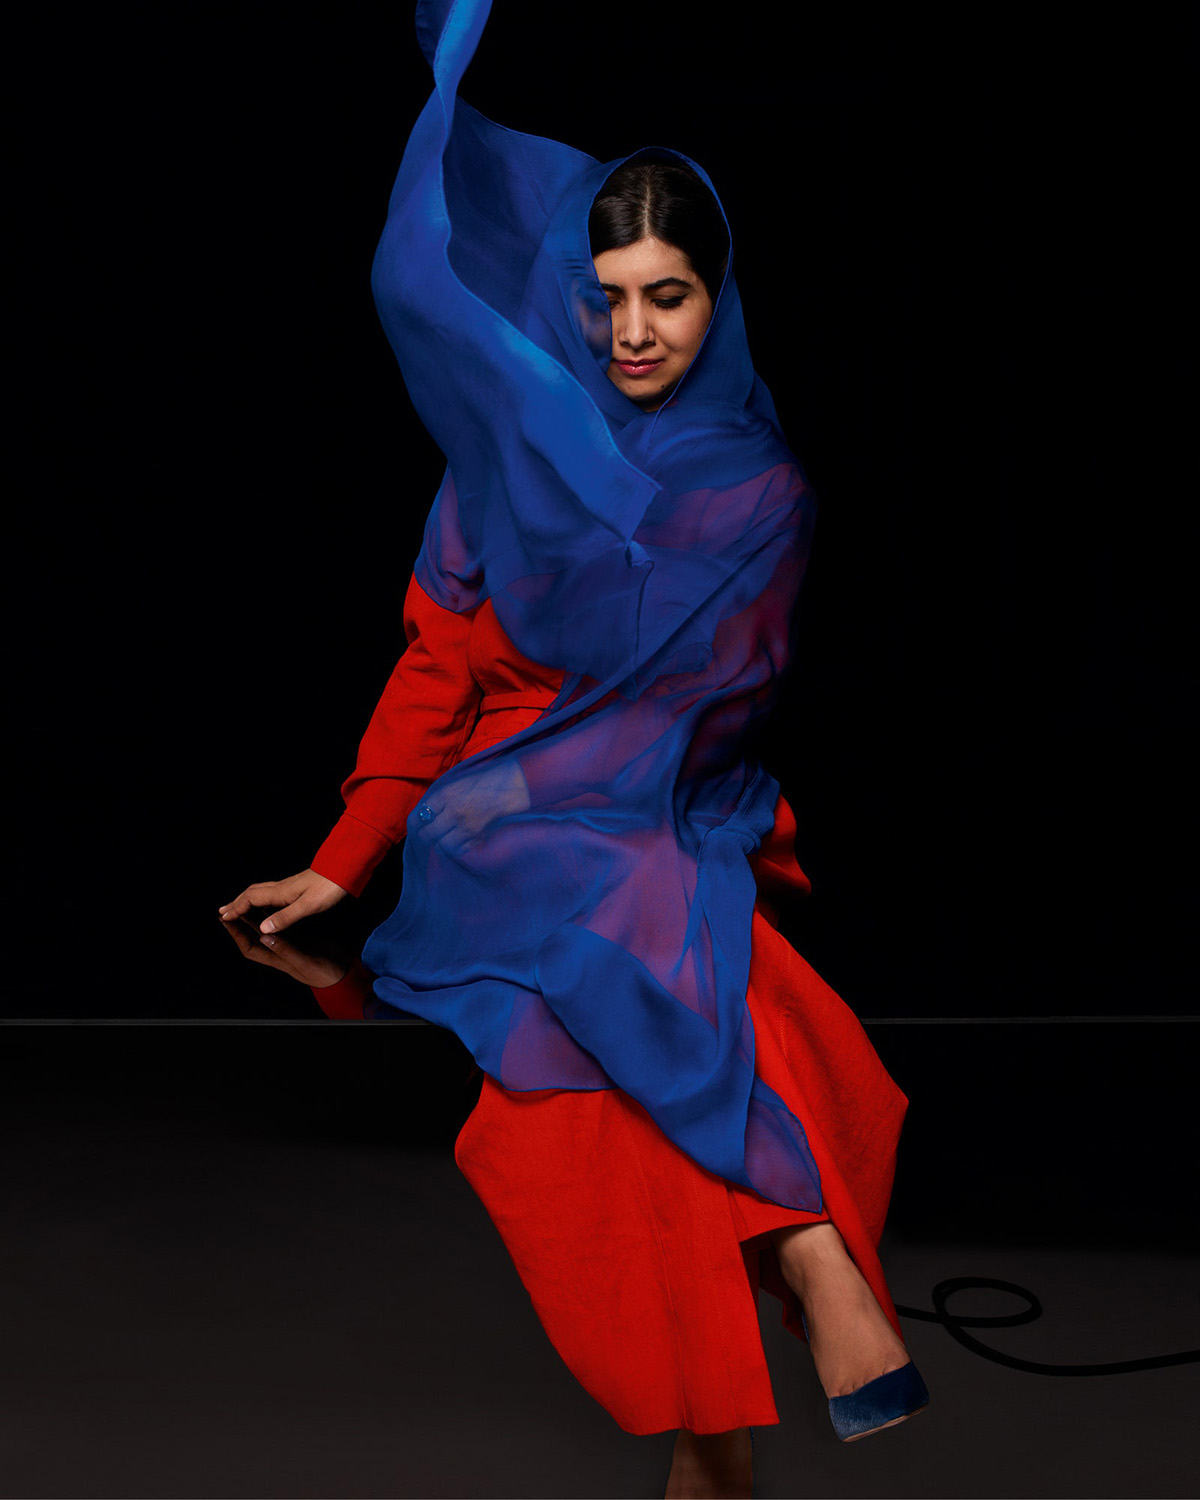 Malala covers British Vogue July 2021 by Nick Knight